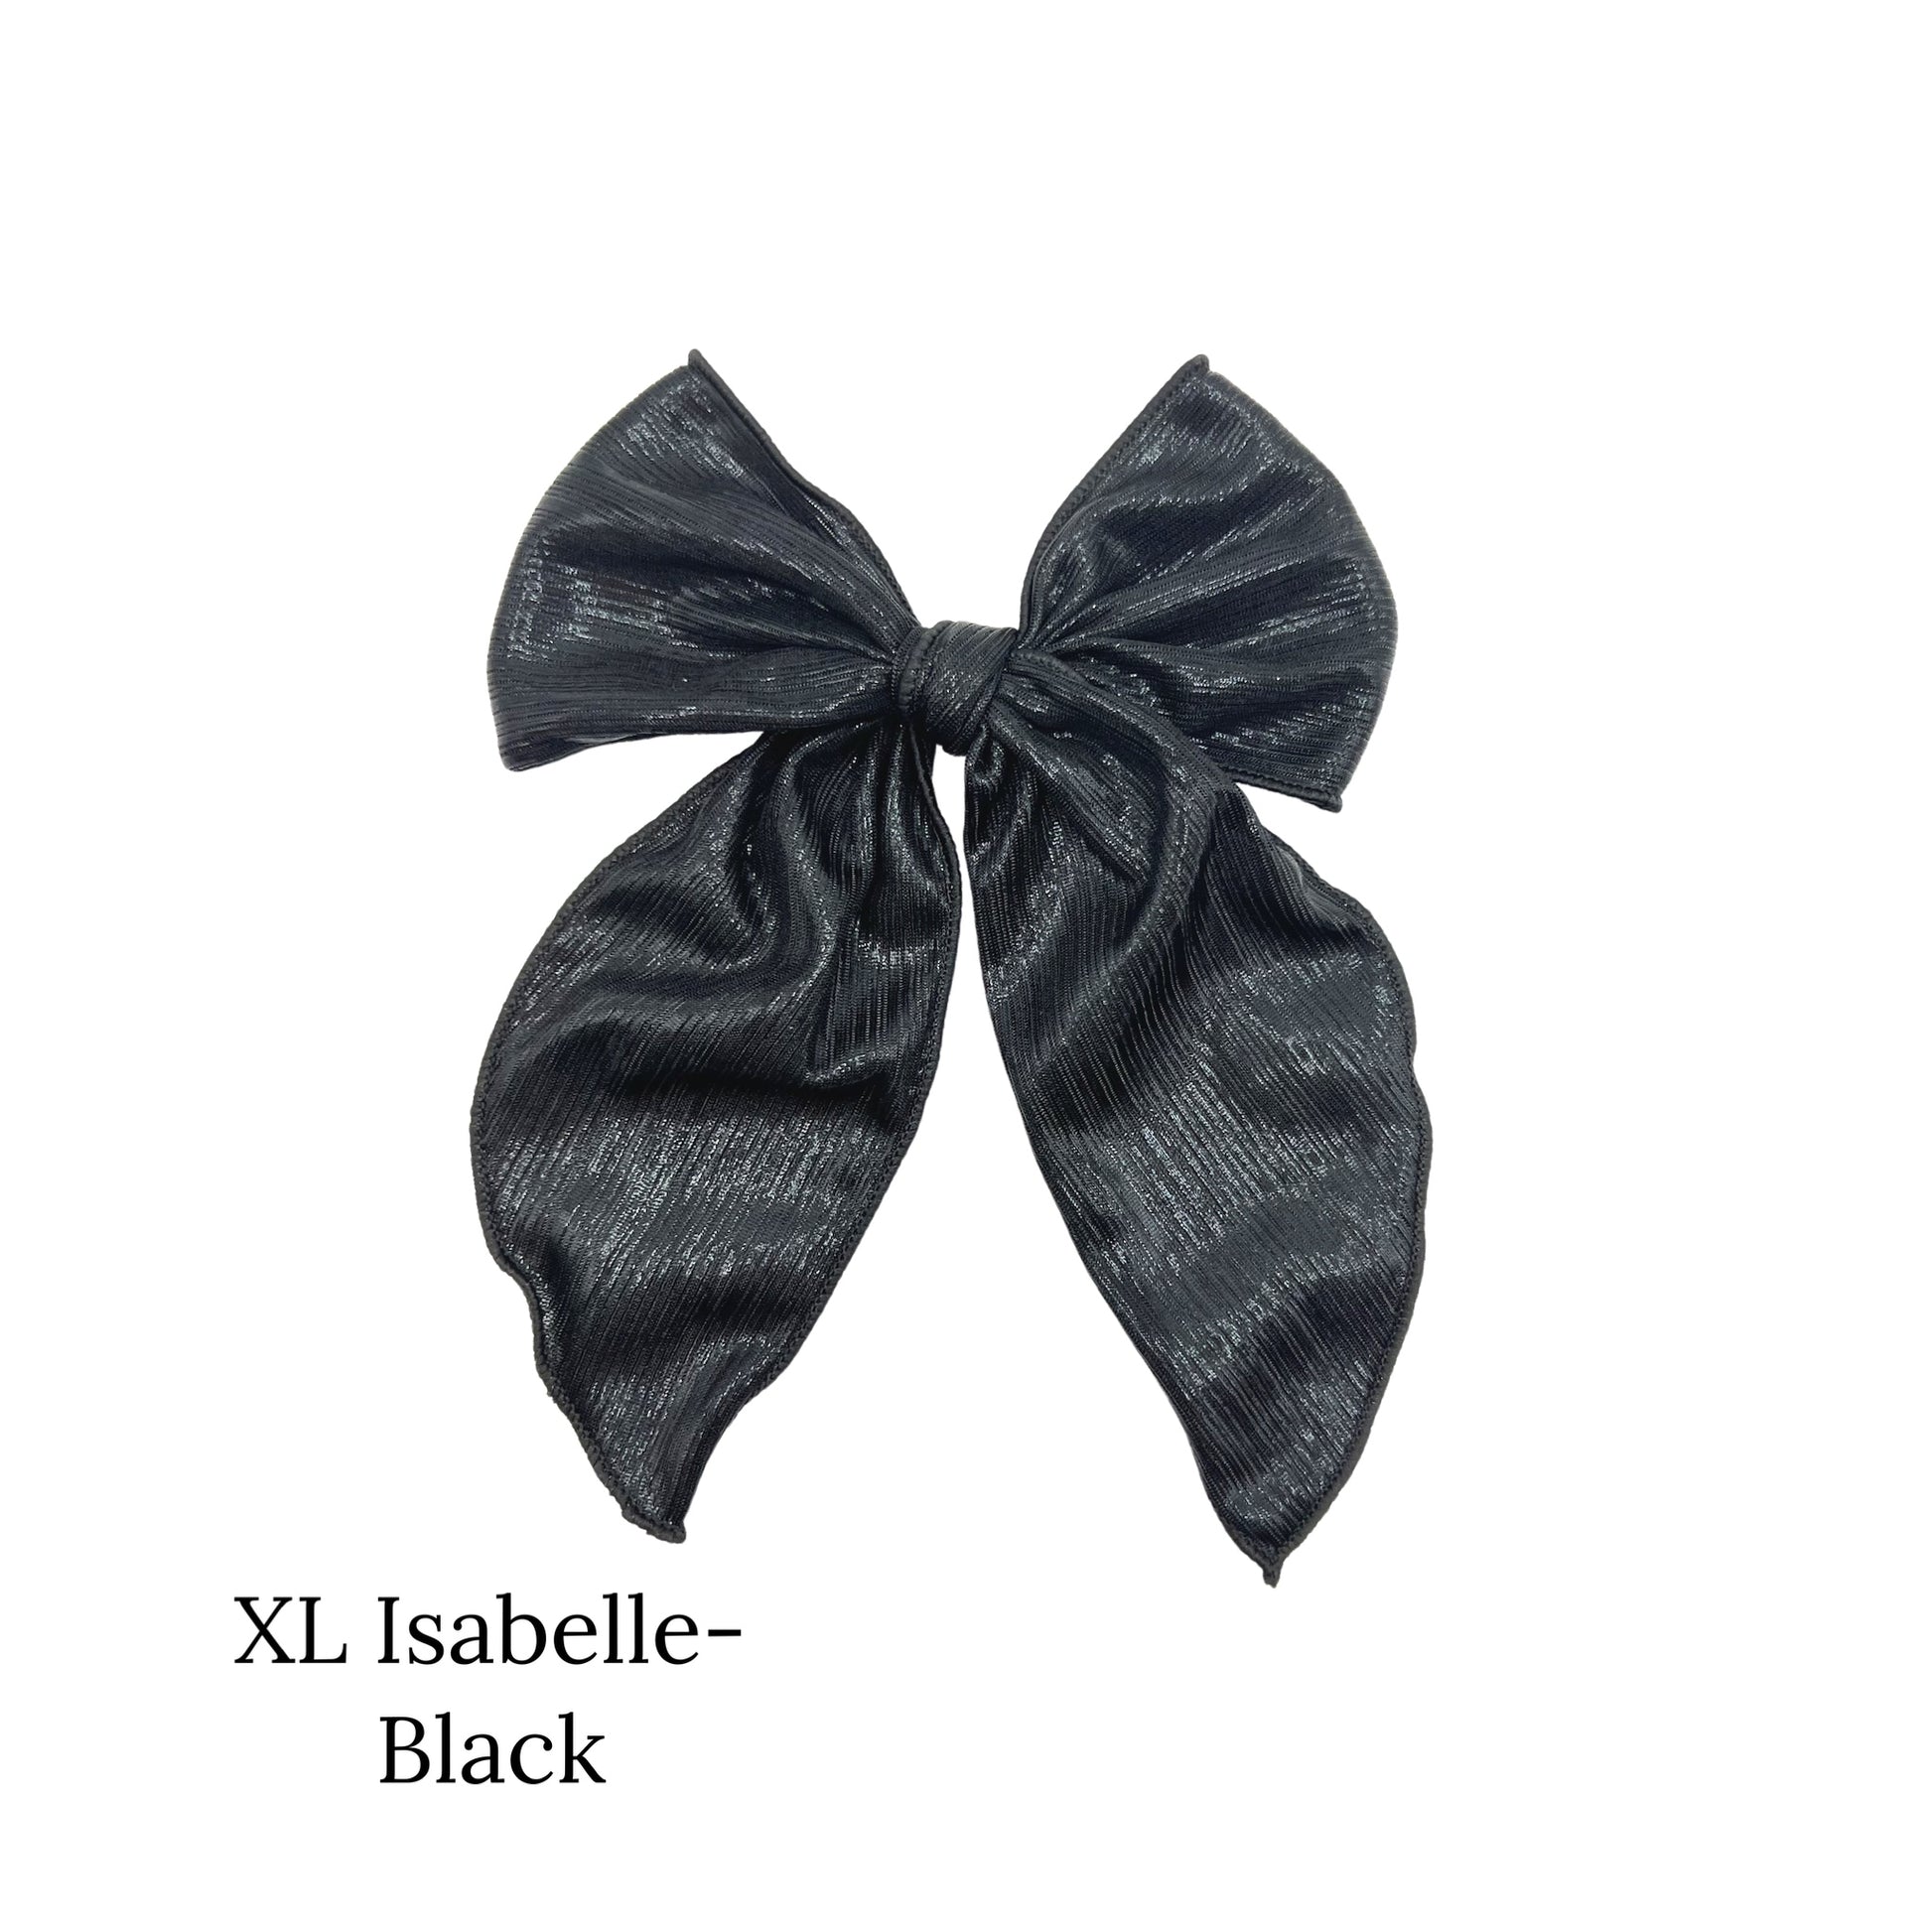 Large metallic black bow